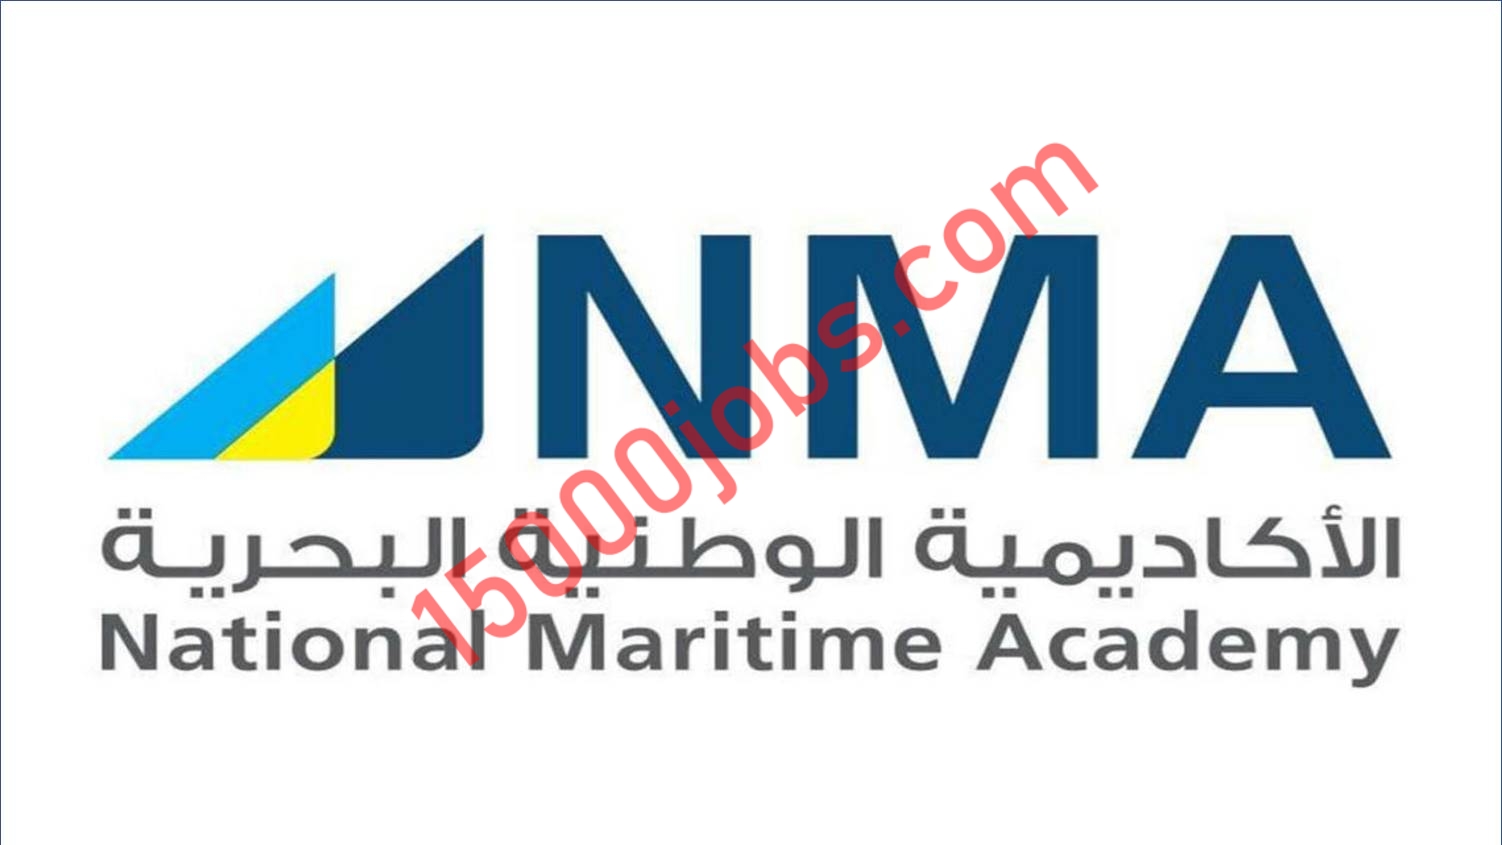 الأكاديمية الوطنية البحرية تقدم برنامج منتهي بالتوظيف – ضابط سطح السفينة